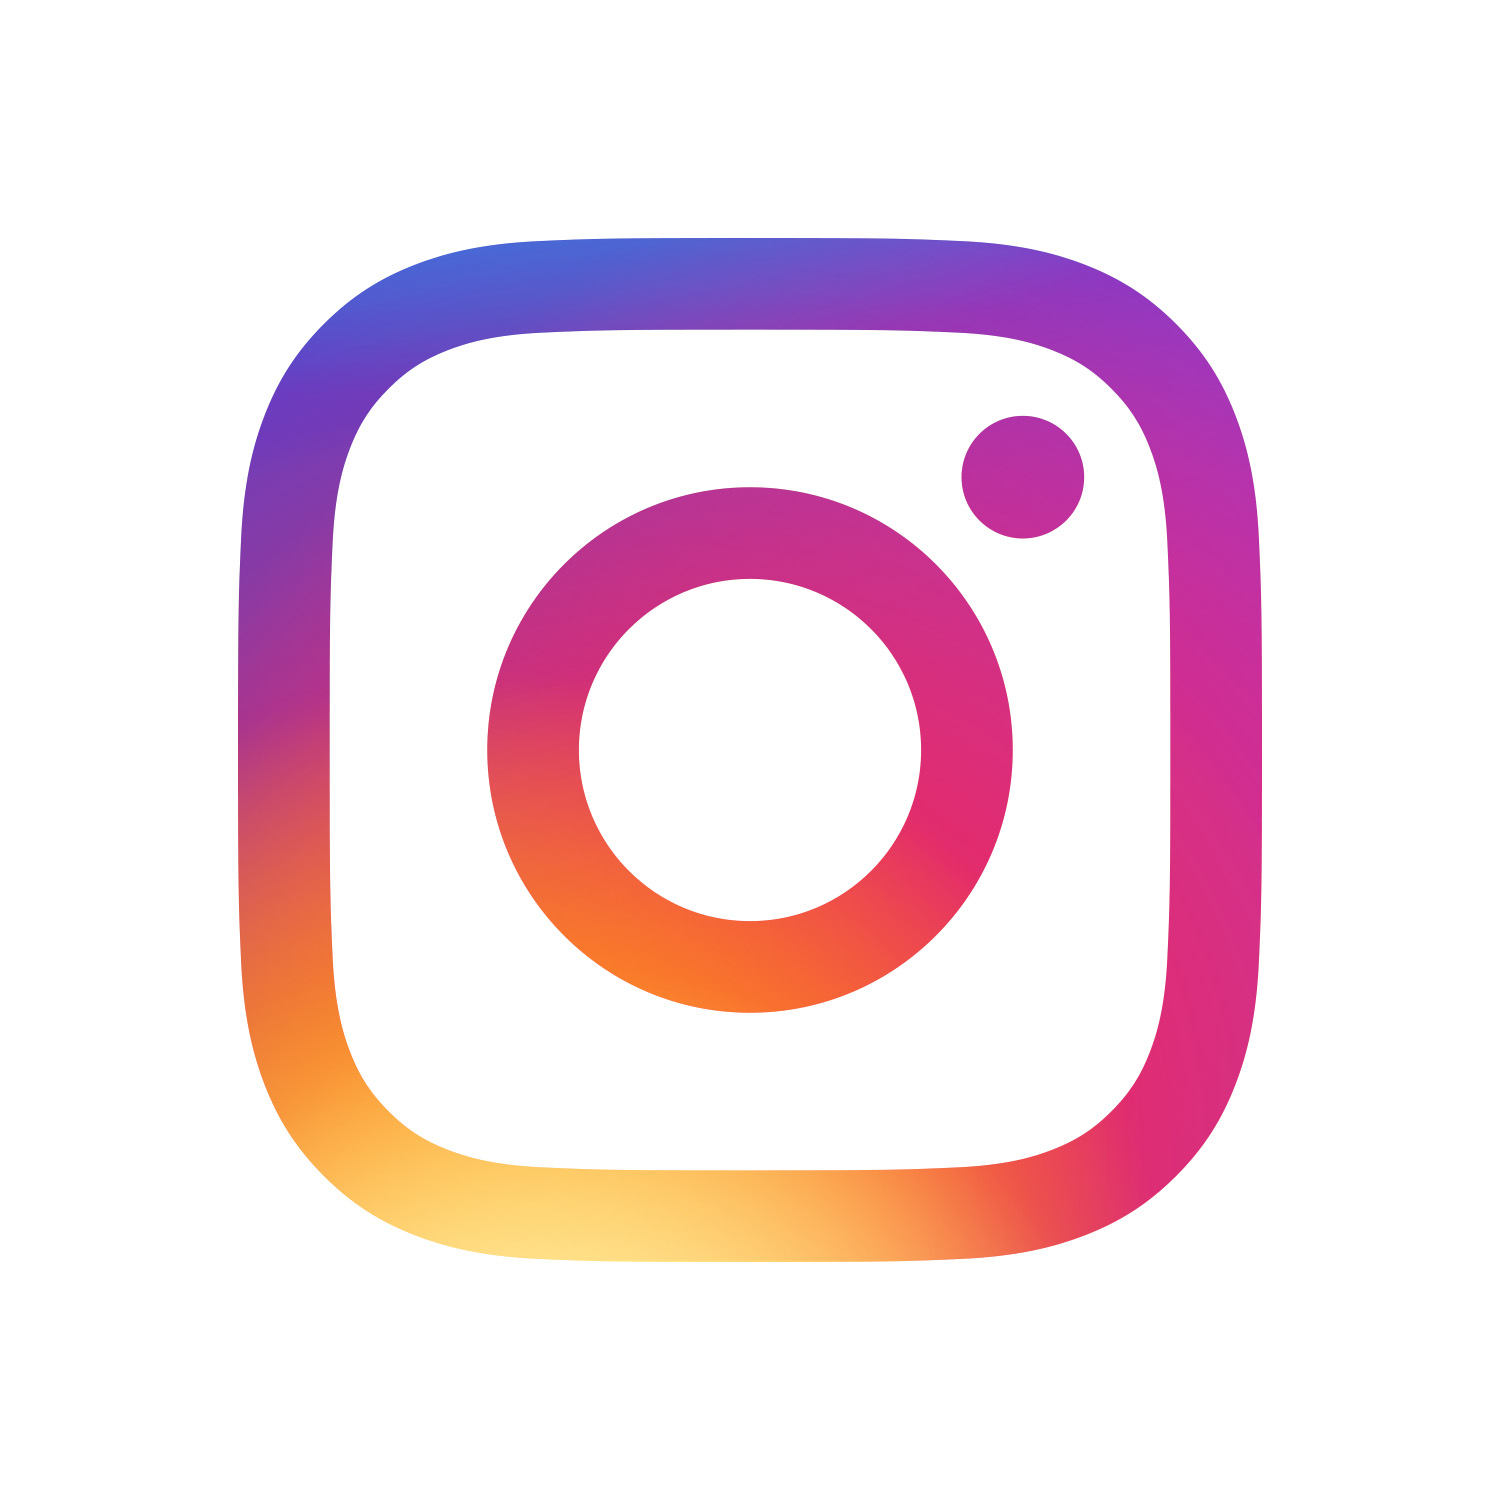 SCHWARZ GmbH ist ab sofort auf Instagram!